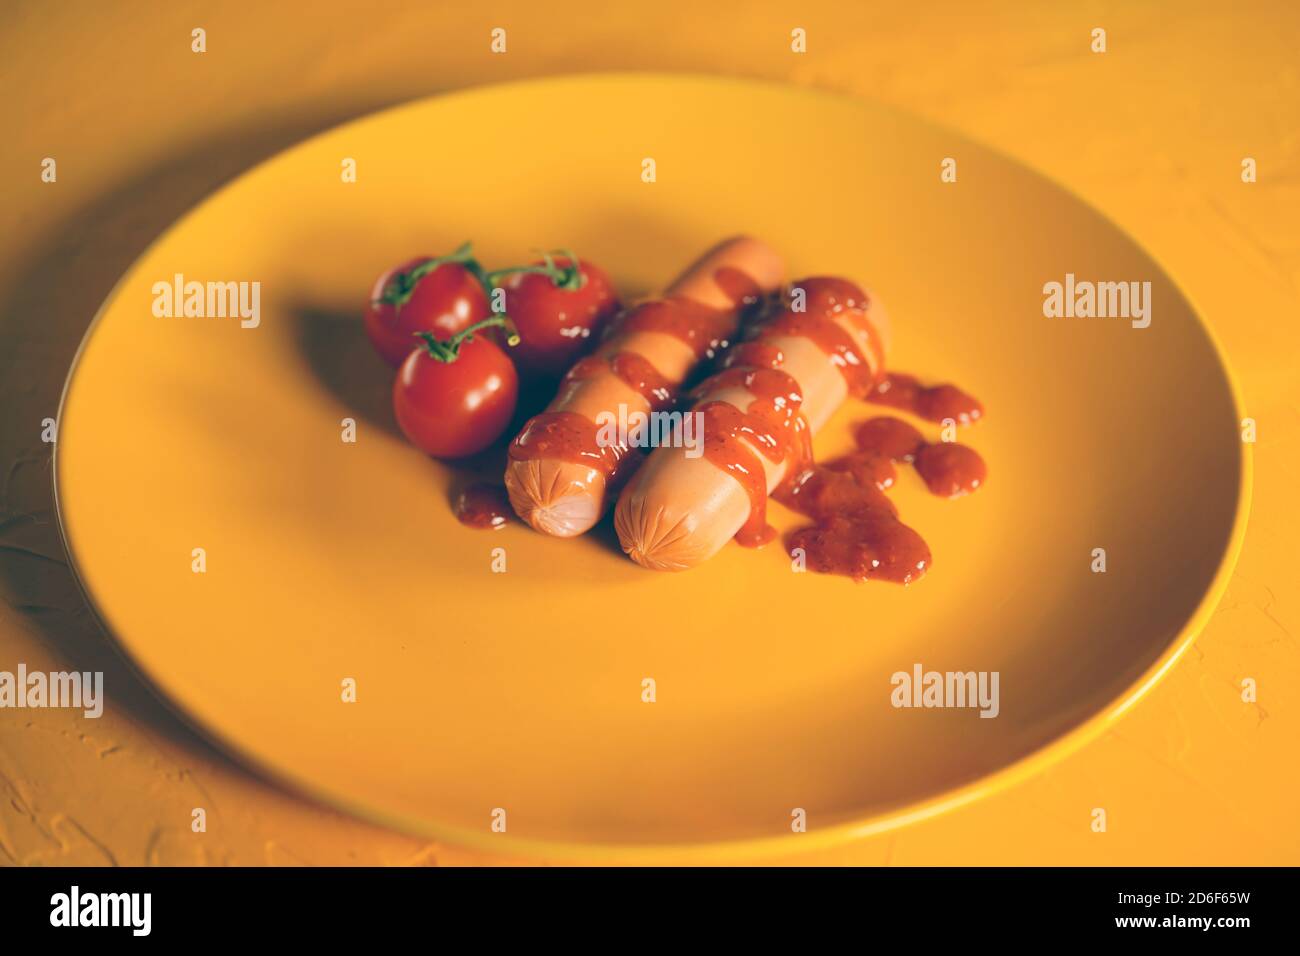 Nahaufnahme von Würsten in Sauce mit Kirschtomaten auf gelbem Teller. Appetitliche Frankfurter mit kleinen roten Tomaten und Ketchup auf gelbem Hintergrund. Stockfoto